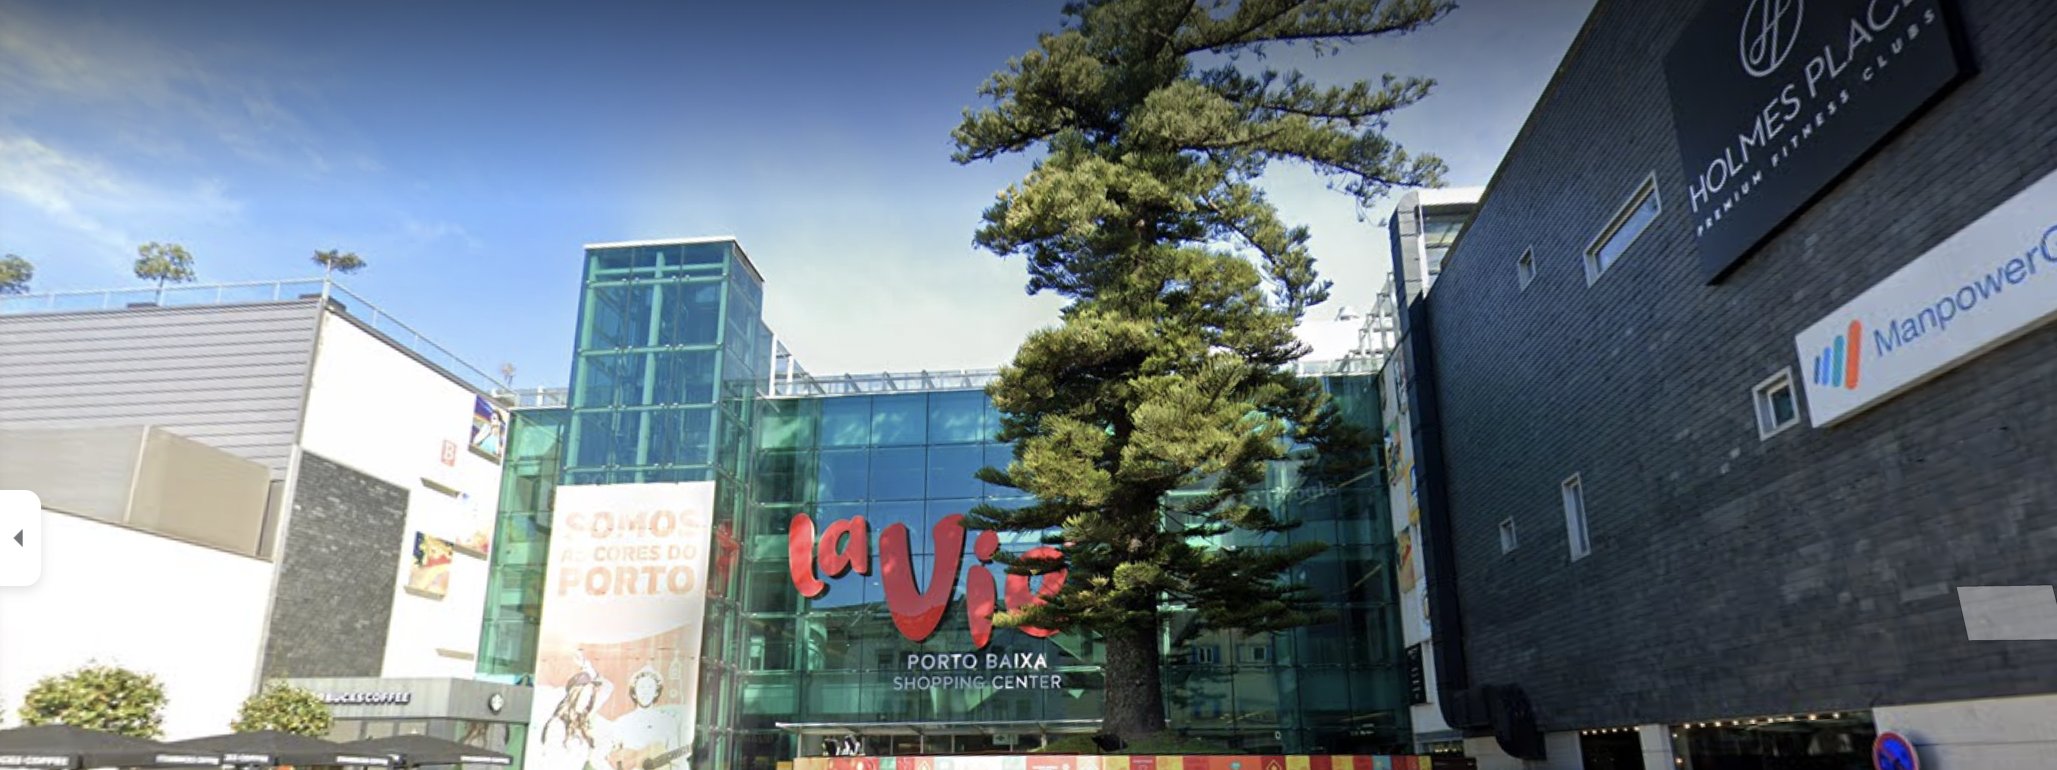 Centro comercial La Vie muda de mãos em março